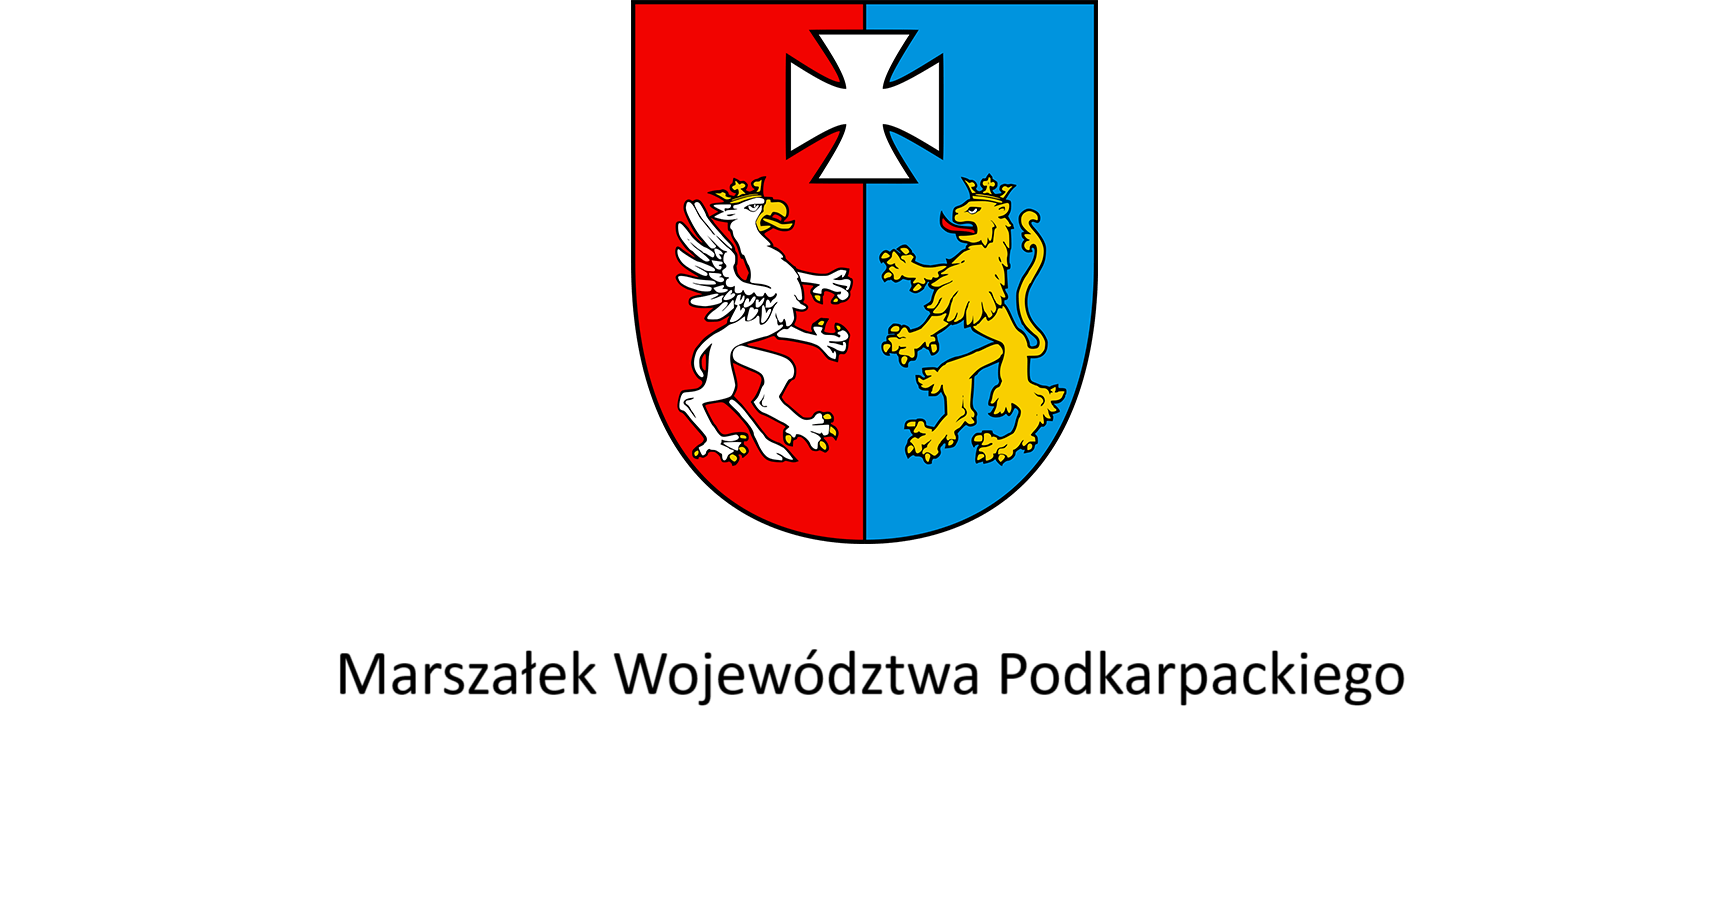 Marszałek Województwa Podkarpackiego